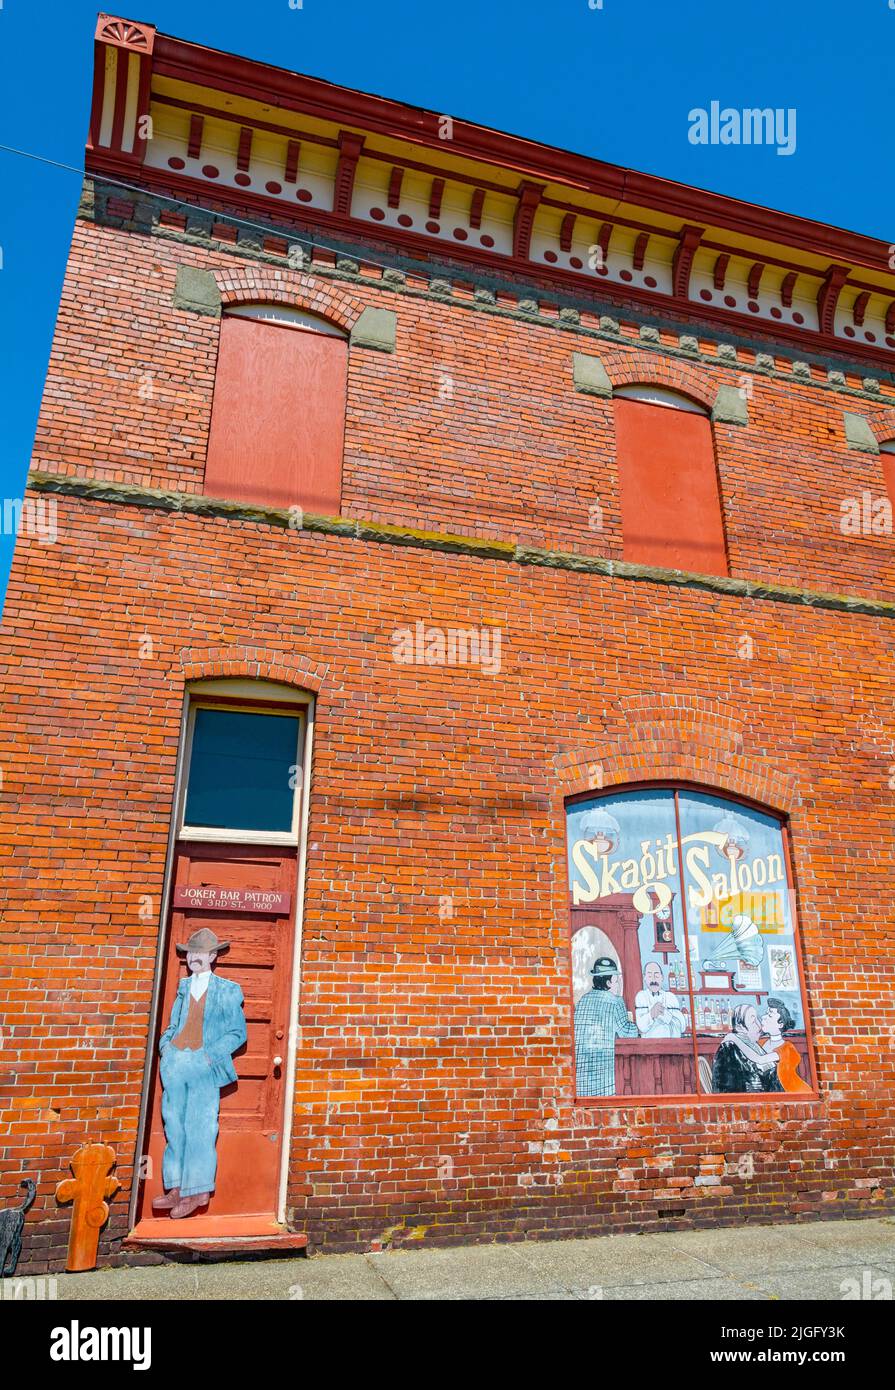 Washington, Anacortes, centro de la ciudad, edificio A. Olson construido en 1902, sitio histórico Skagit Saloon Foto de stock